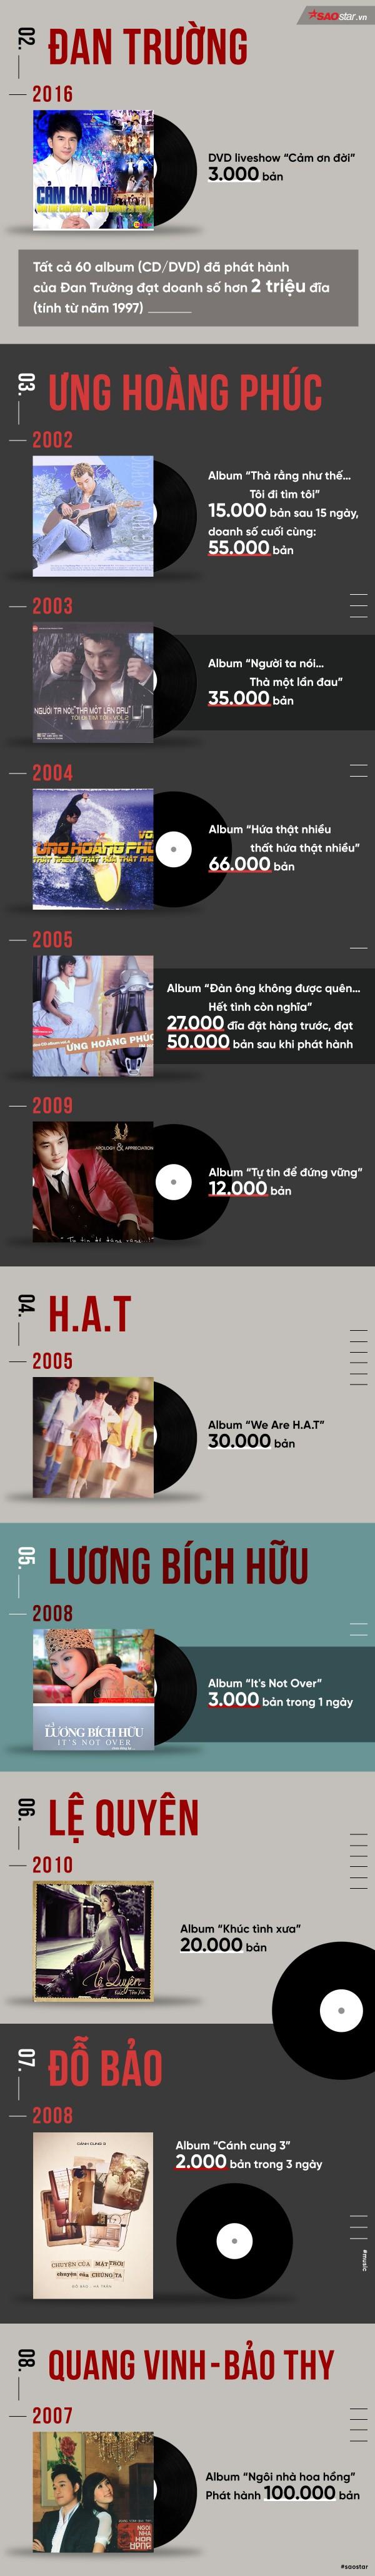 Infographic: Cùng Mỹ Tâm, nghệ sĩ Việt nào từng ghi dấu ấn với việc bán đĩa?-3